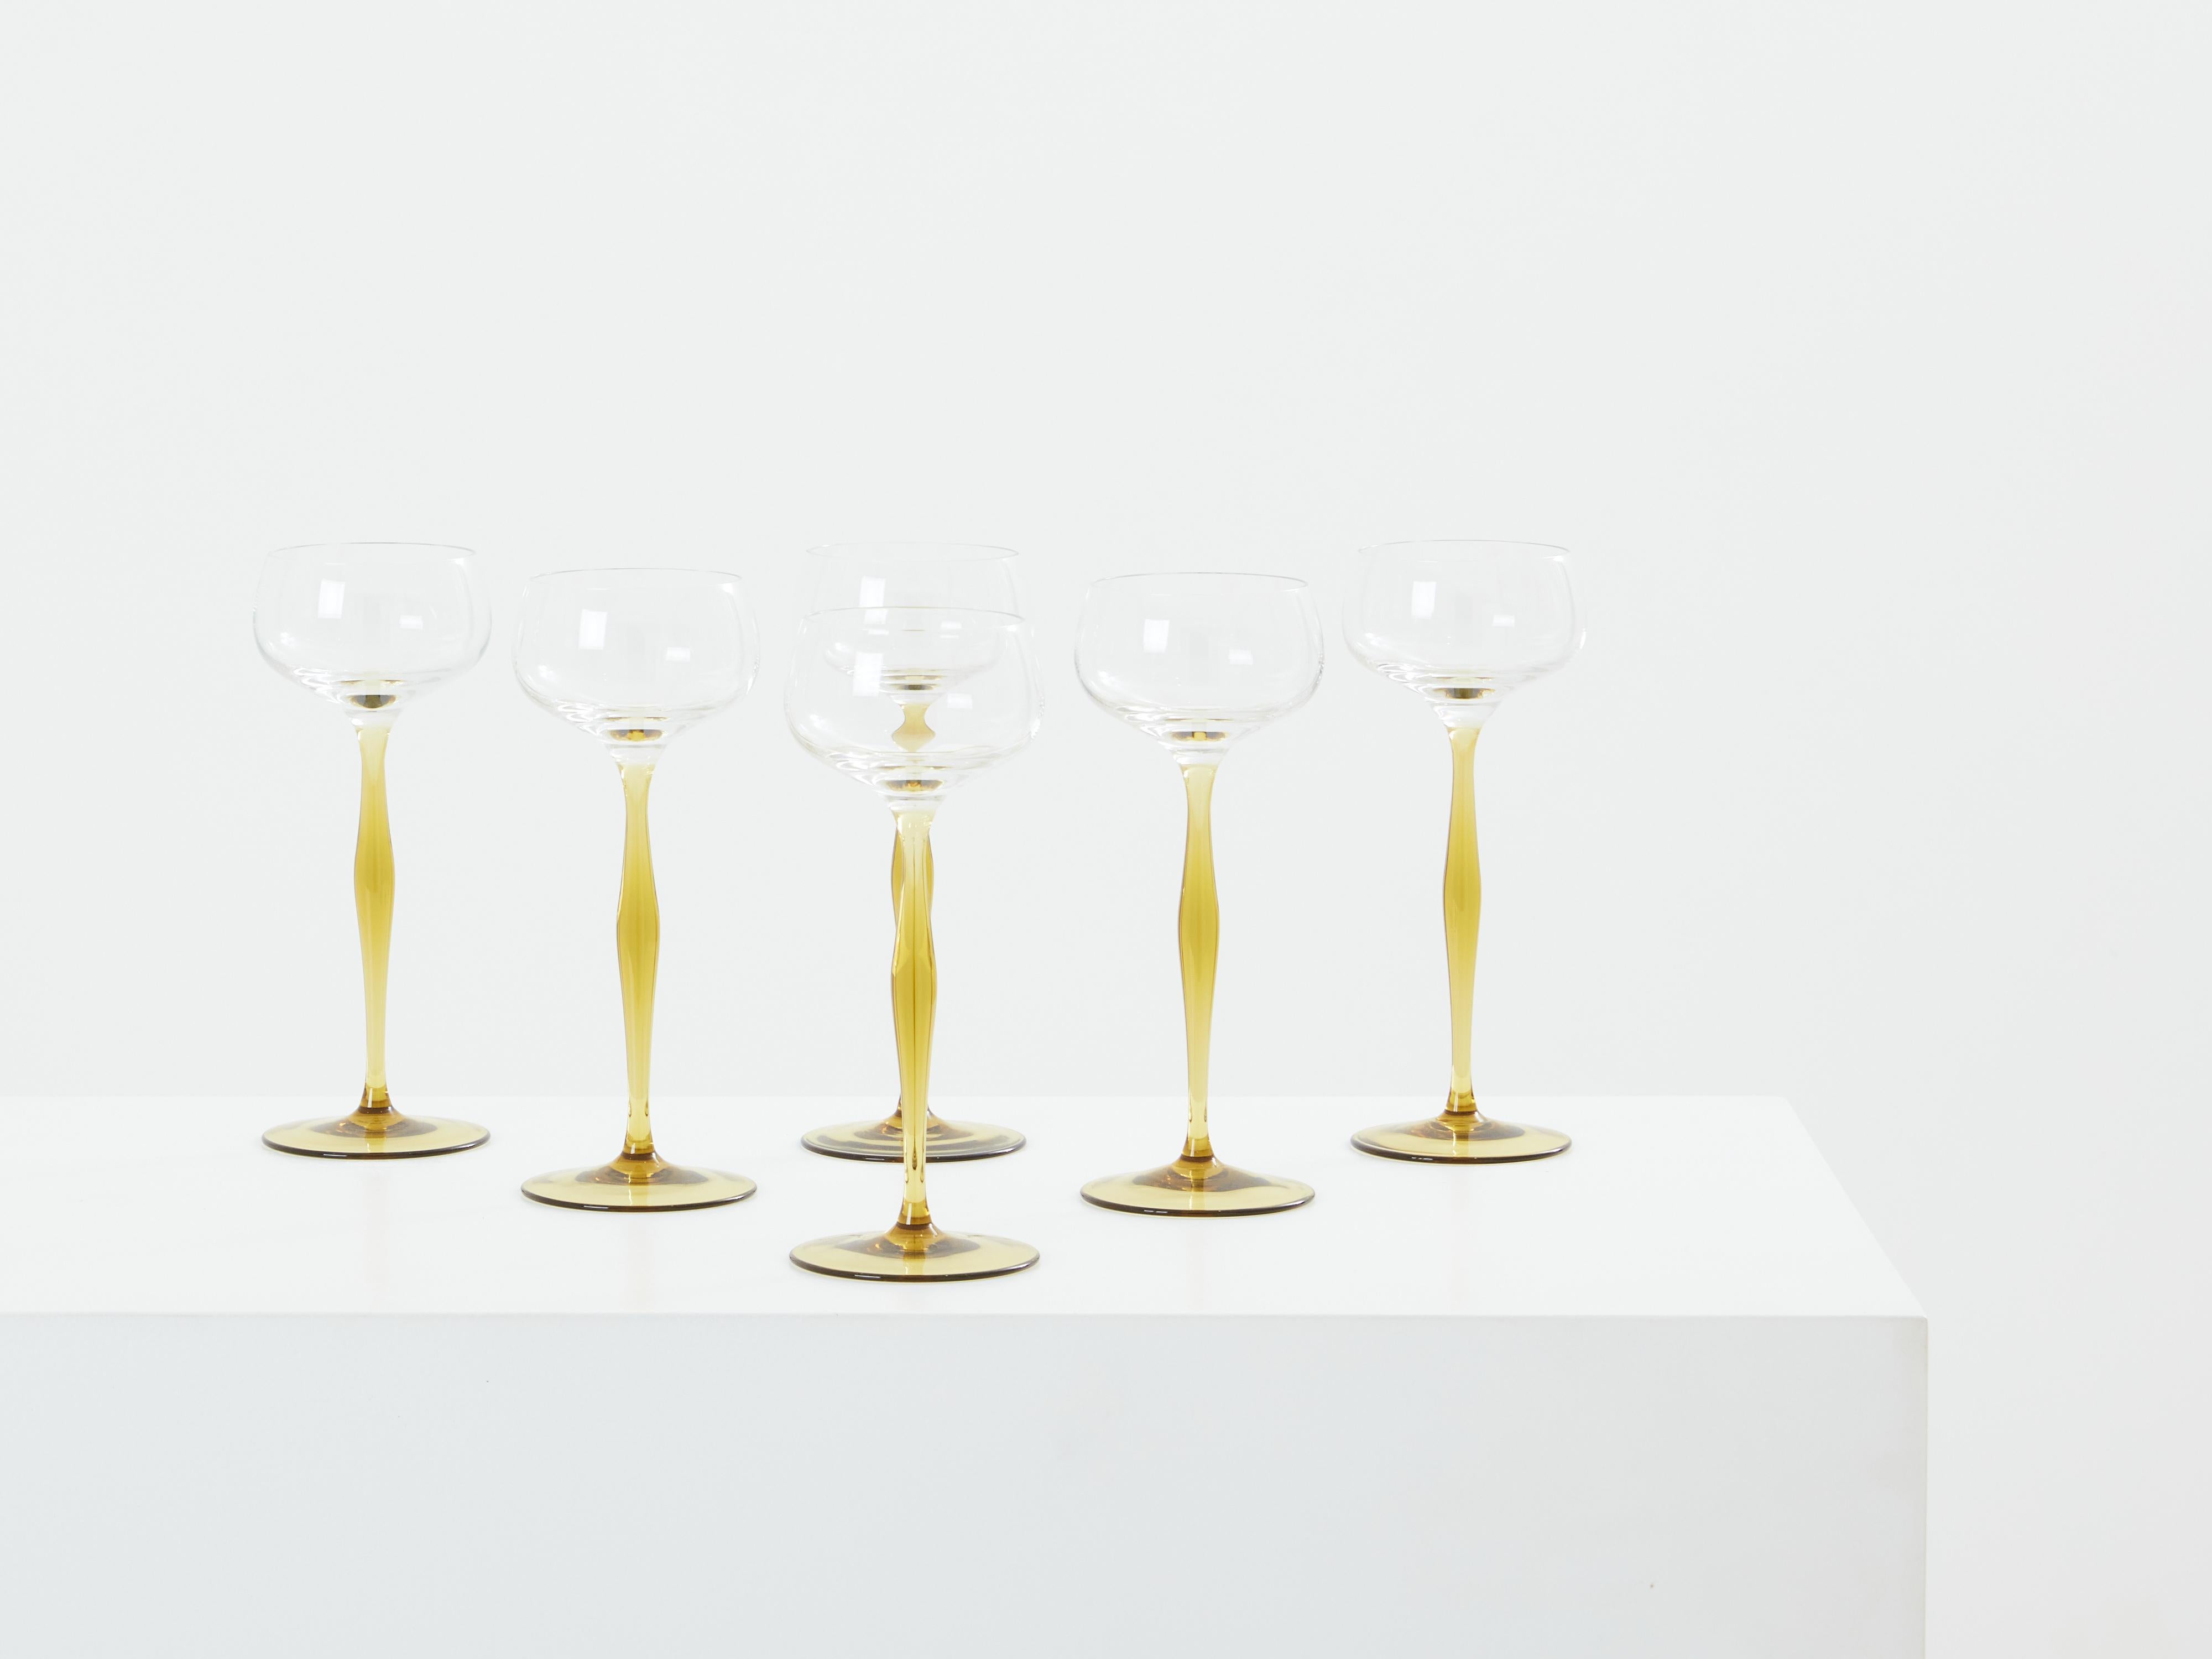 Cet ensemble de six coupes à champagne, conçu par Peter Behrens pour Benedikt von Poschinger, datant de 1898, incarne un savant mélange d'innovation et d'esthétique. Chaque verre se compose d'un bol bombé en verre transparent monté sur une longue